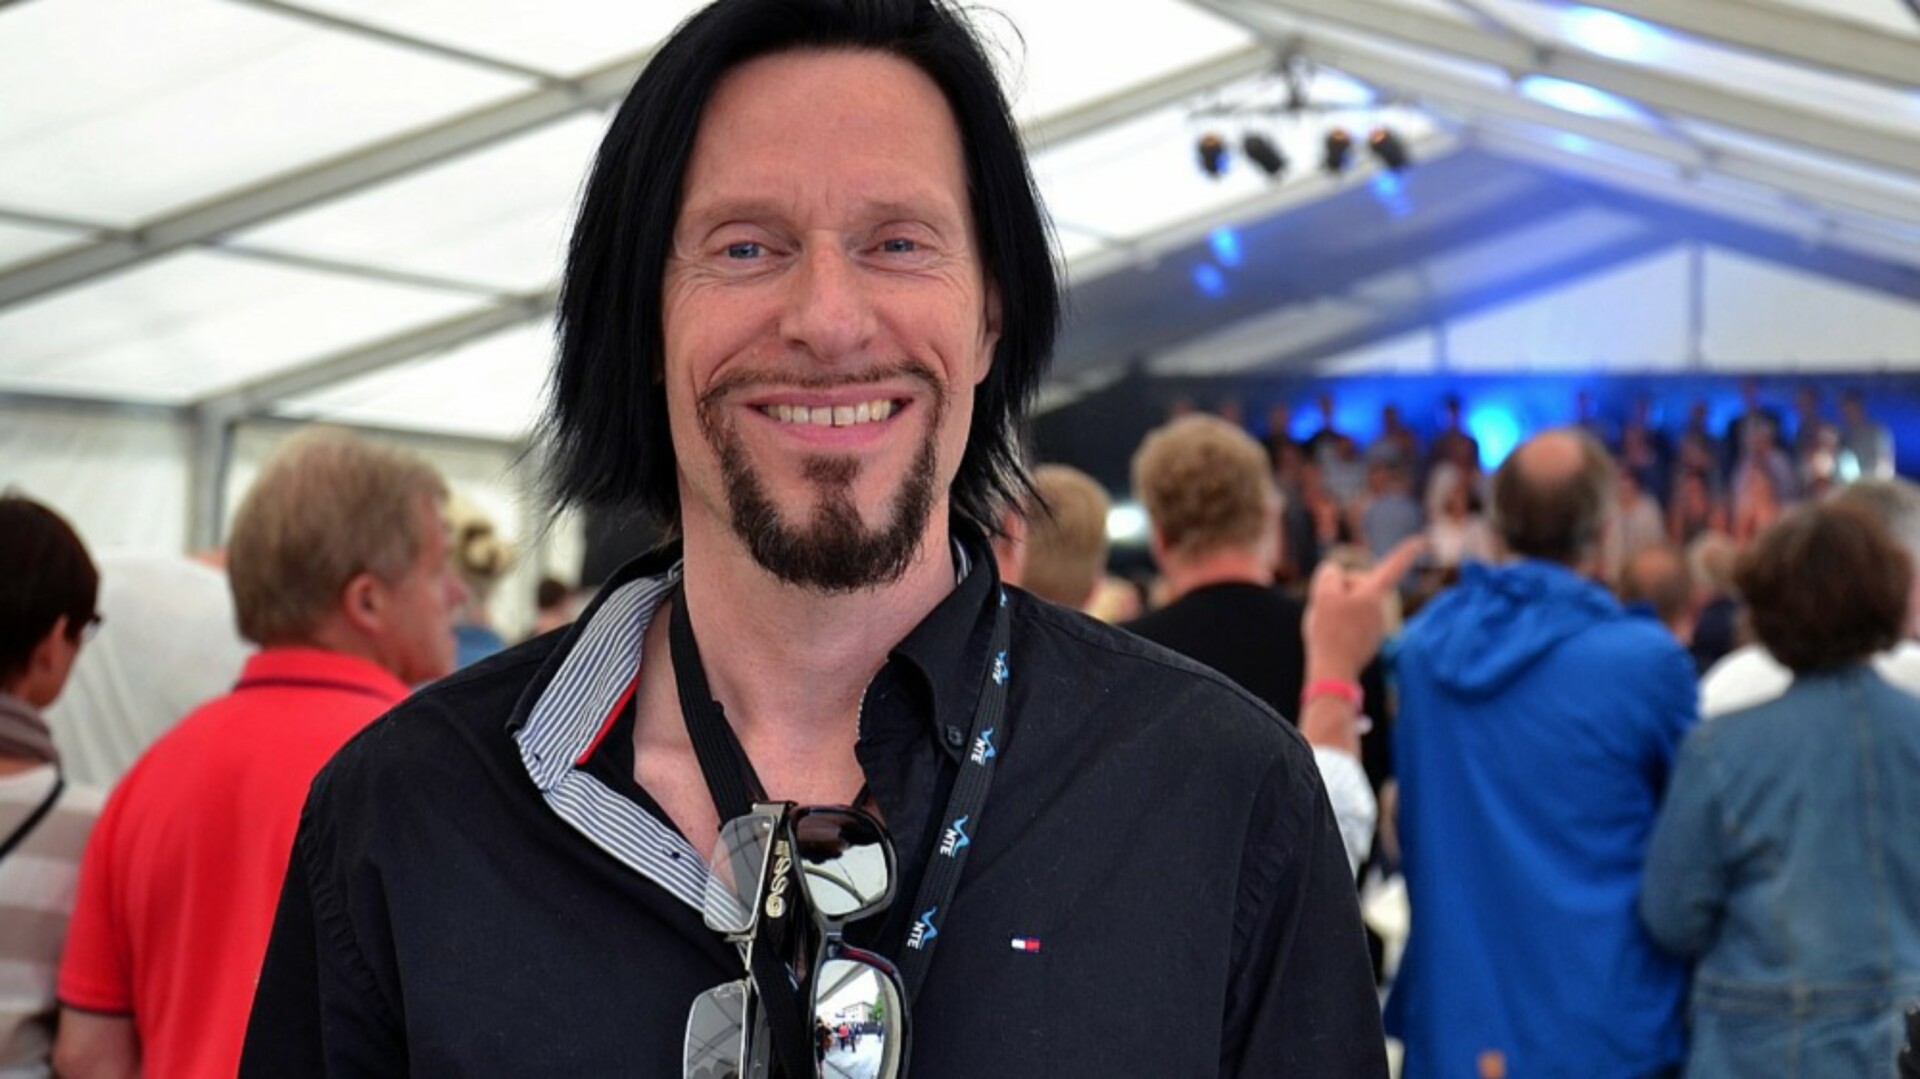 Tar ansvar: Artister som kommer til Steinkjerfestivalen sender ofte raider over hva de forventer å finne bak scenen. Da stryker festivalsjef Svein Bjørge store mengder alkohol fra listen.

